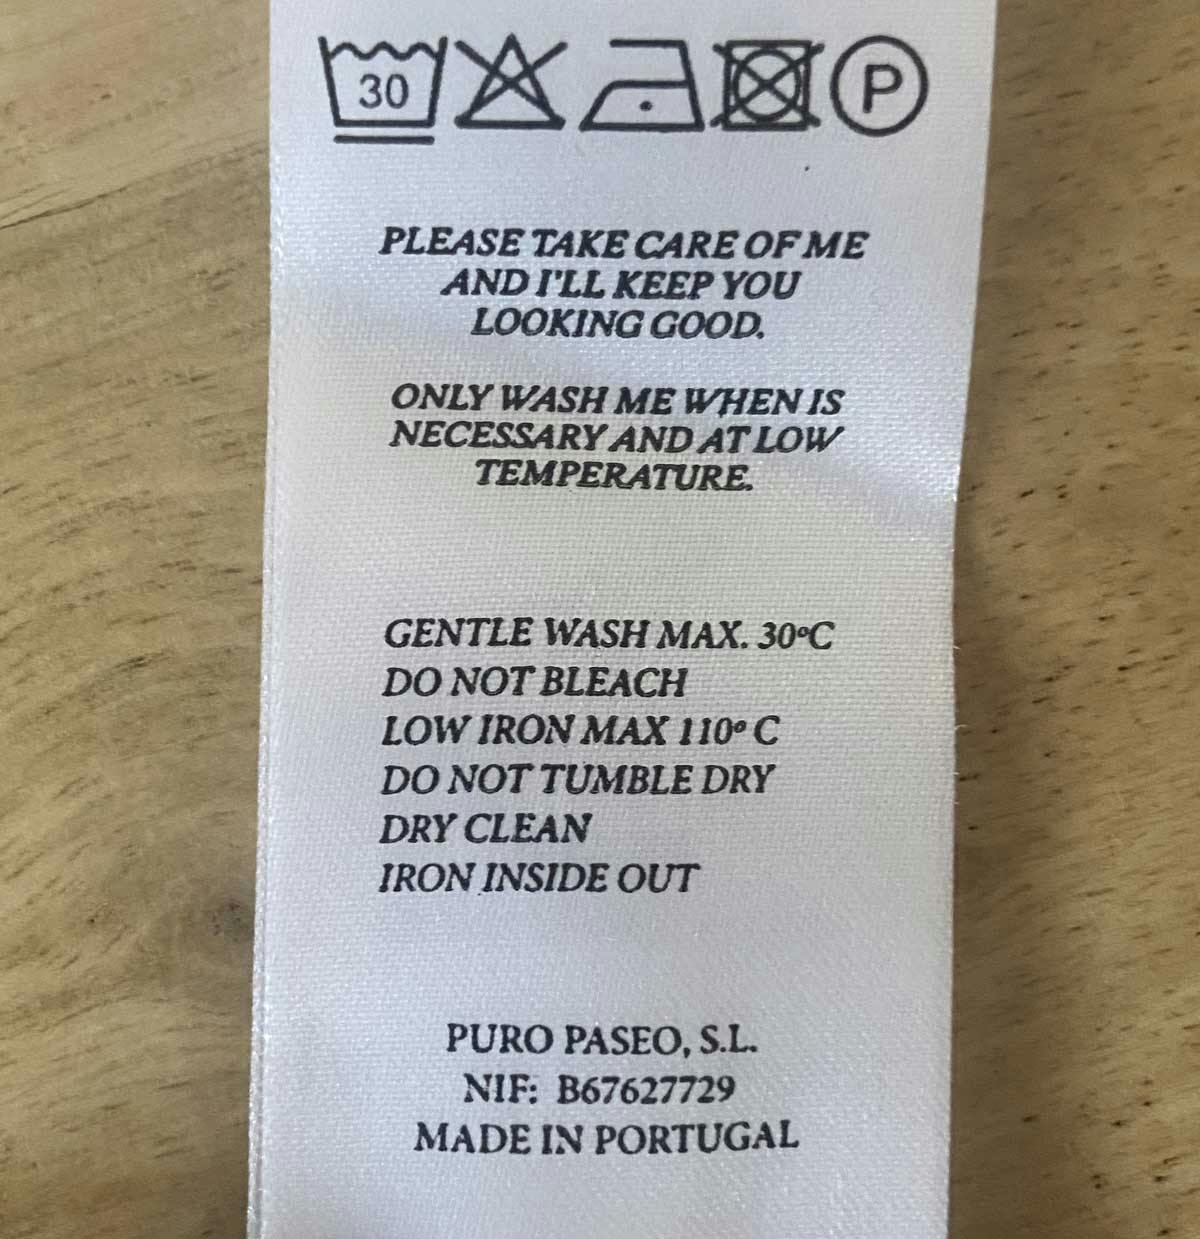  Etichetta lavaggio per indumenti